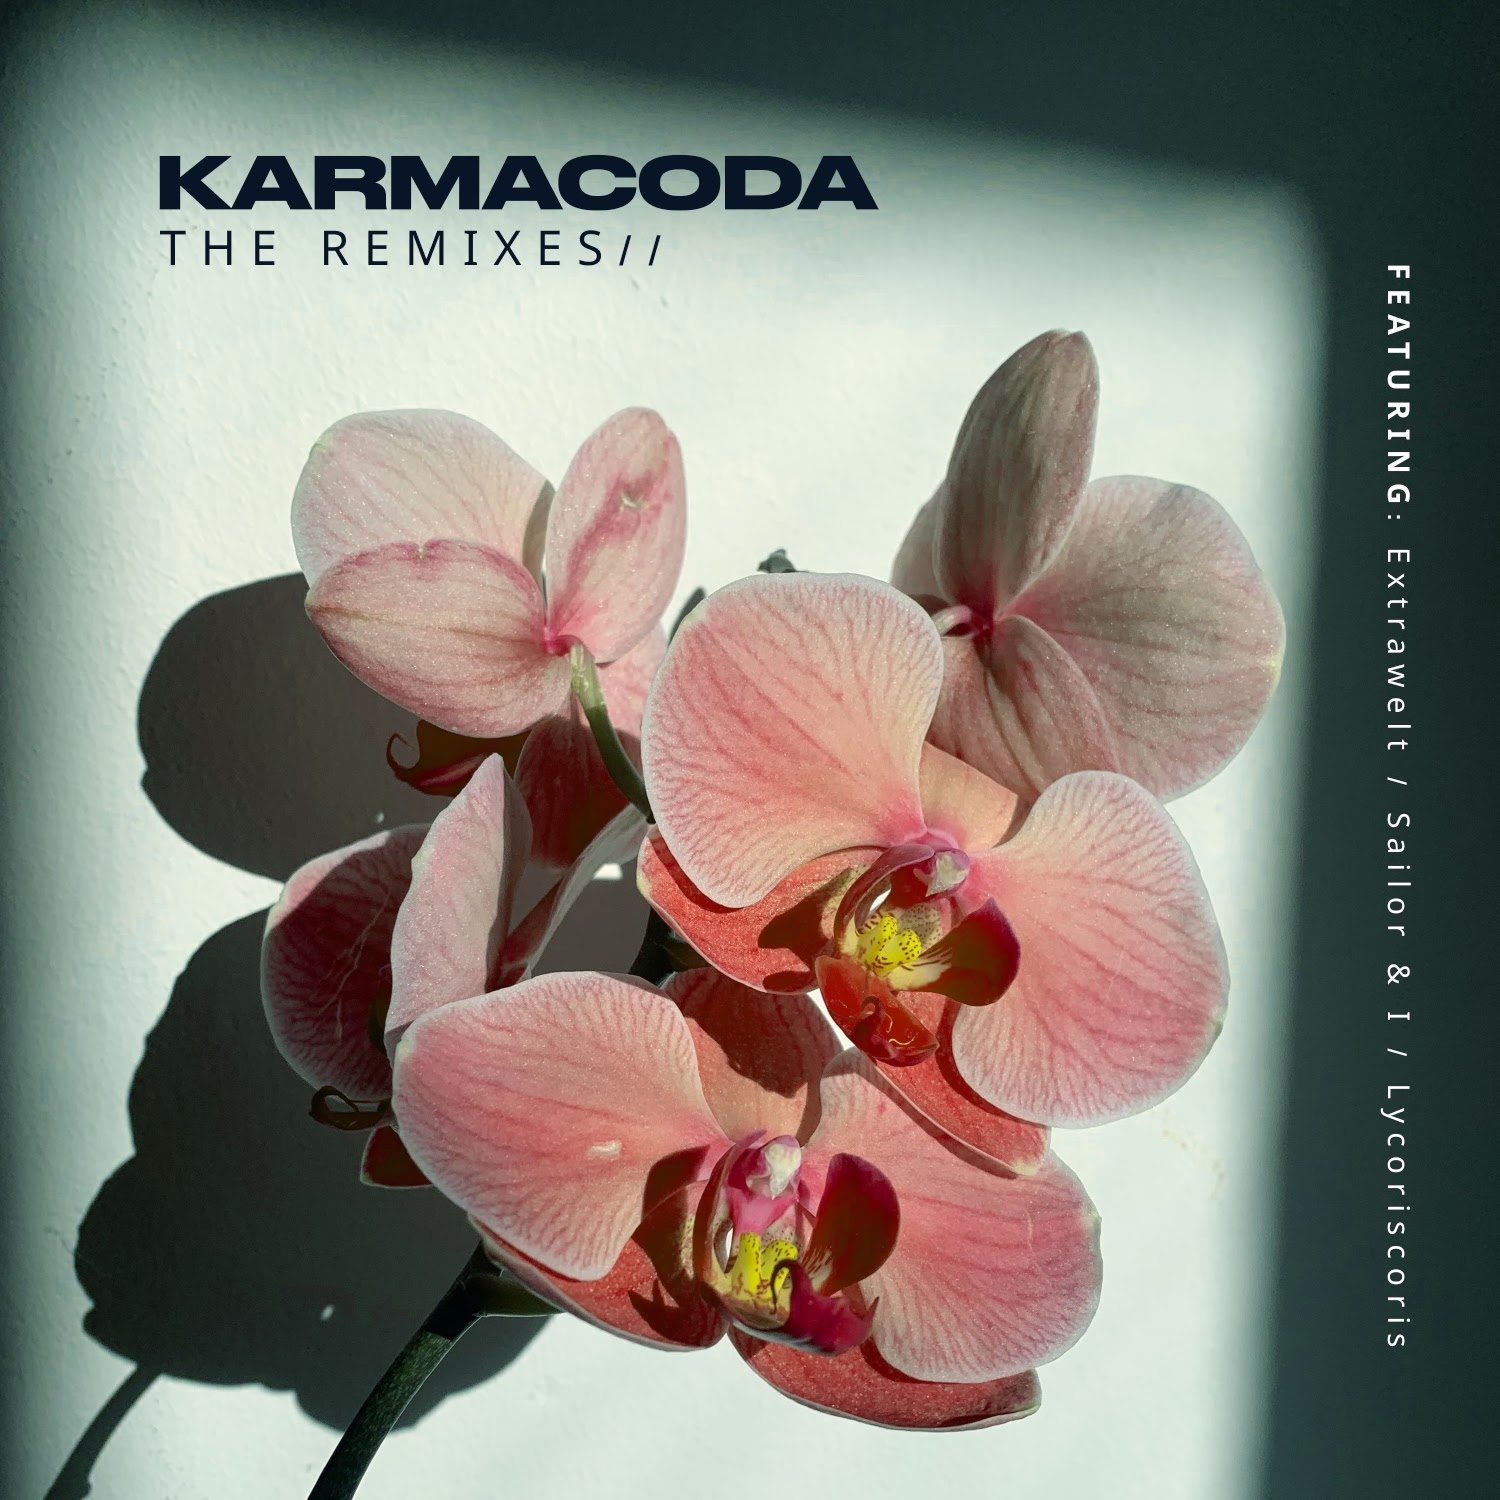 KARMACODA estrena su EP ‘Remixes’